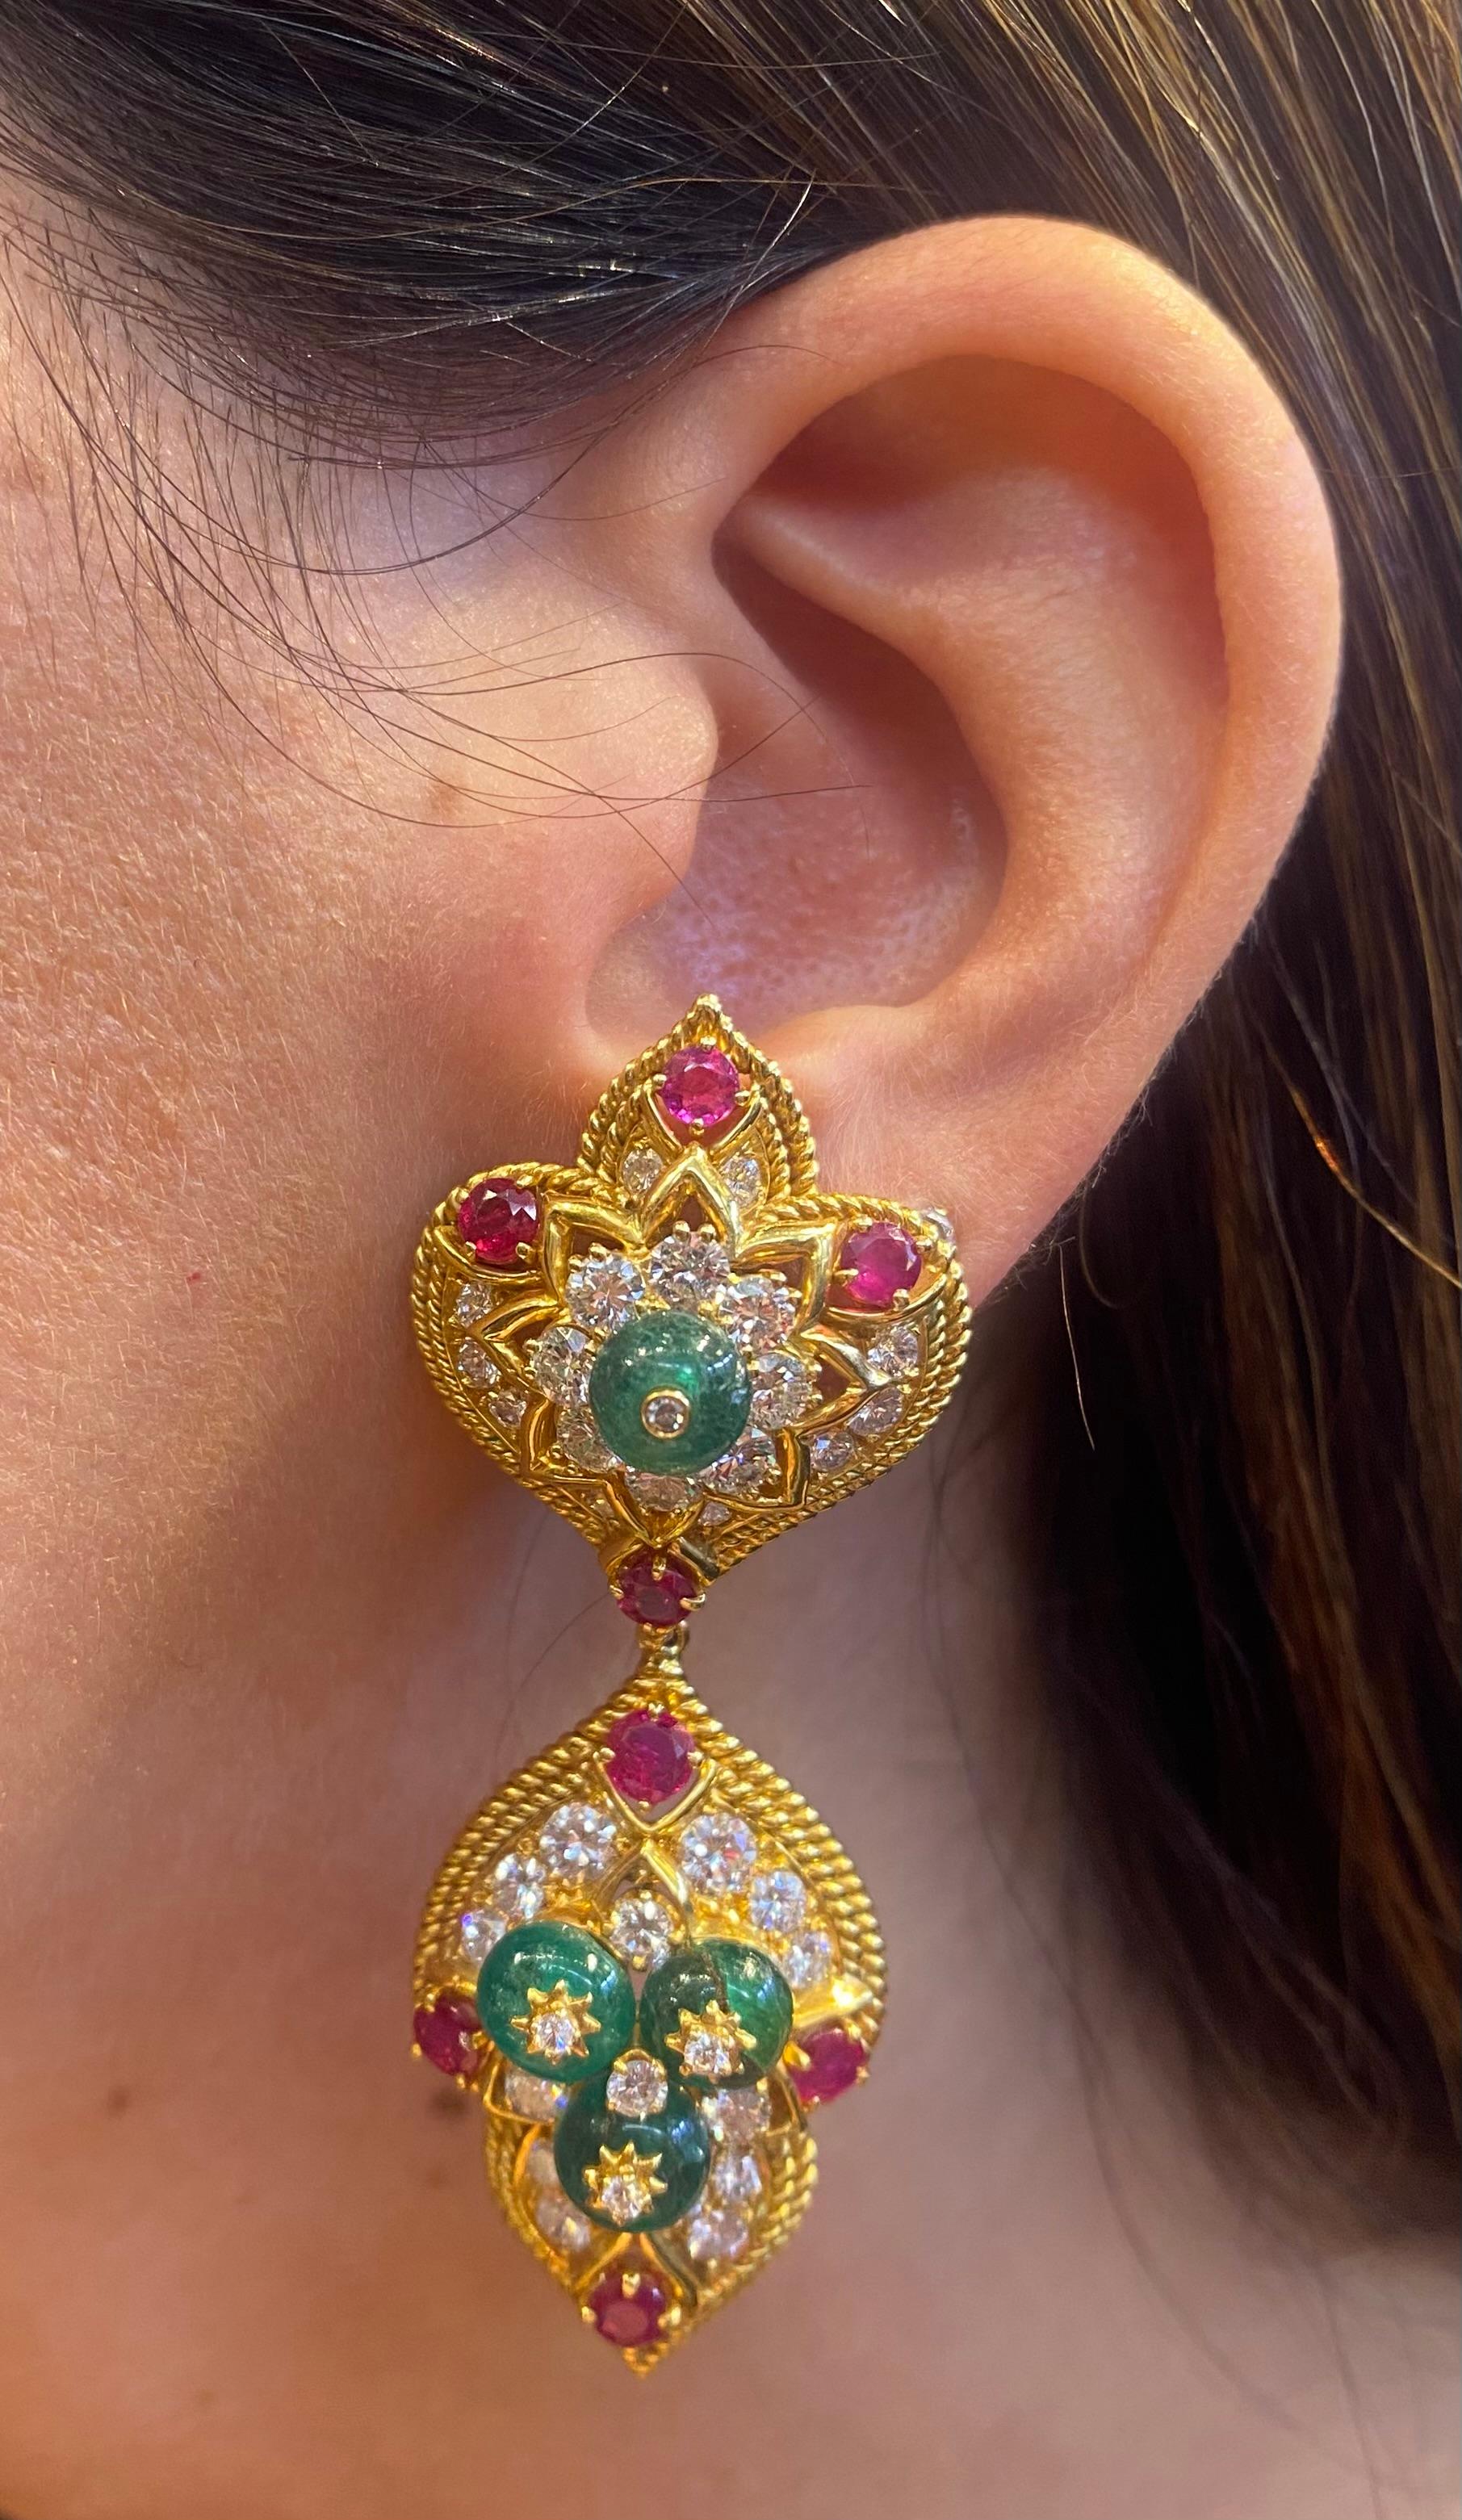 van cleef inspired earrings